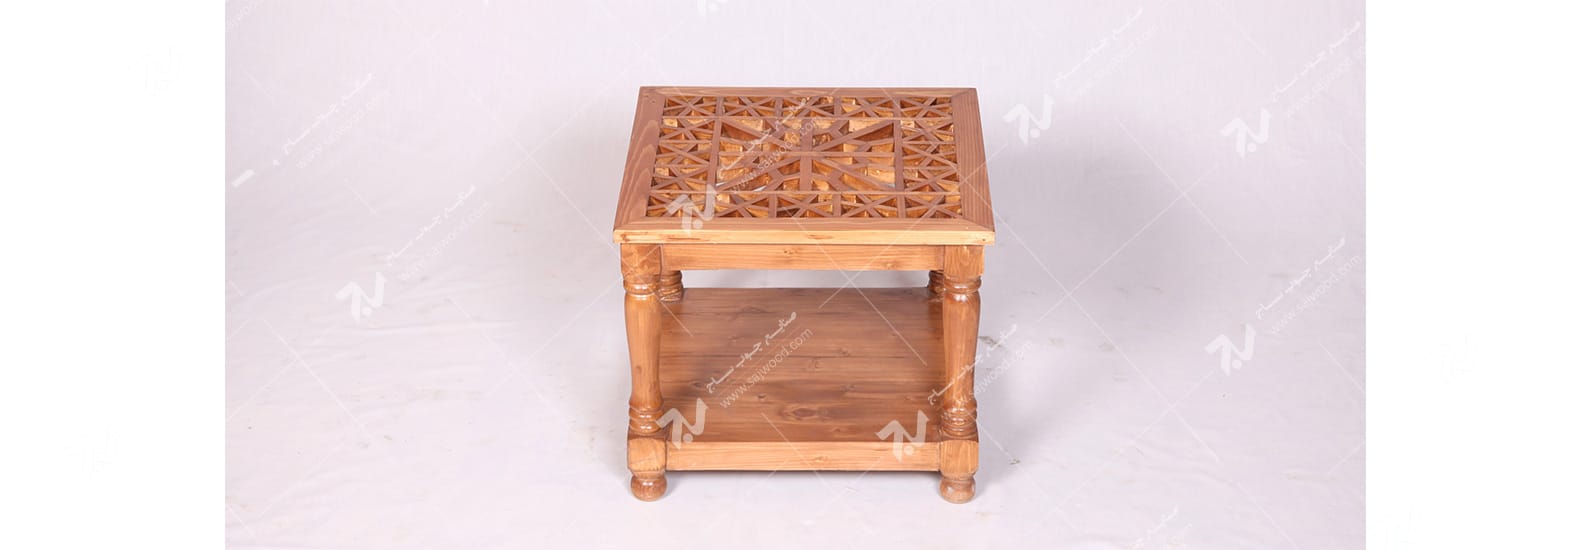 میز عسلی ، پذیرایی (کنارمبلی) چوبی سنتی مشبک گره چینی - سمن کد ۳۱۱